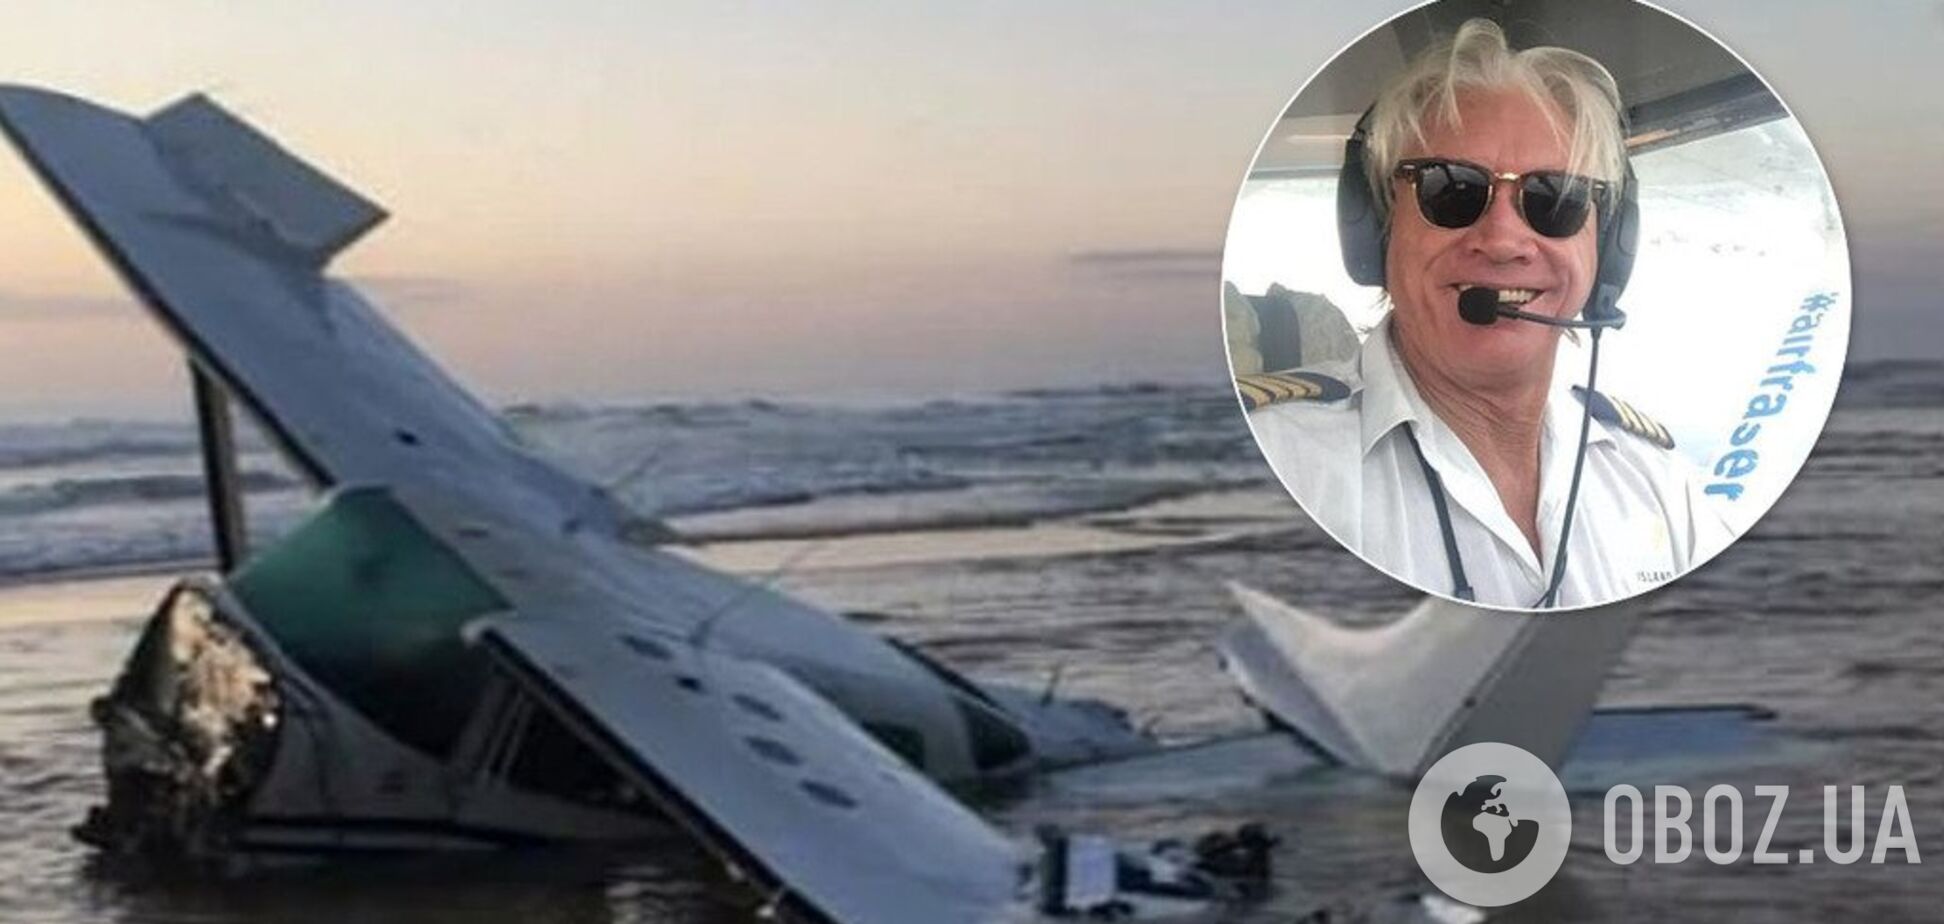 'Открыли дверь, когда самолет падал': пилот рассказал о чудо-спасении во время авиакатастрофы